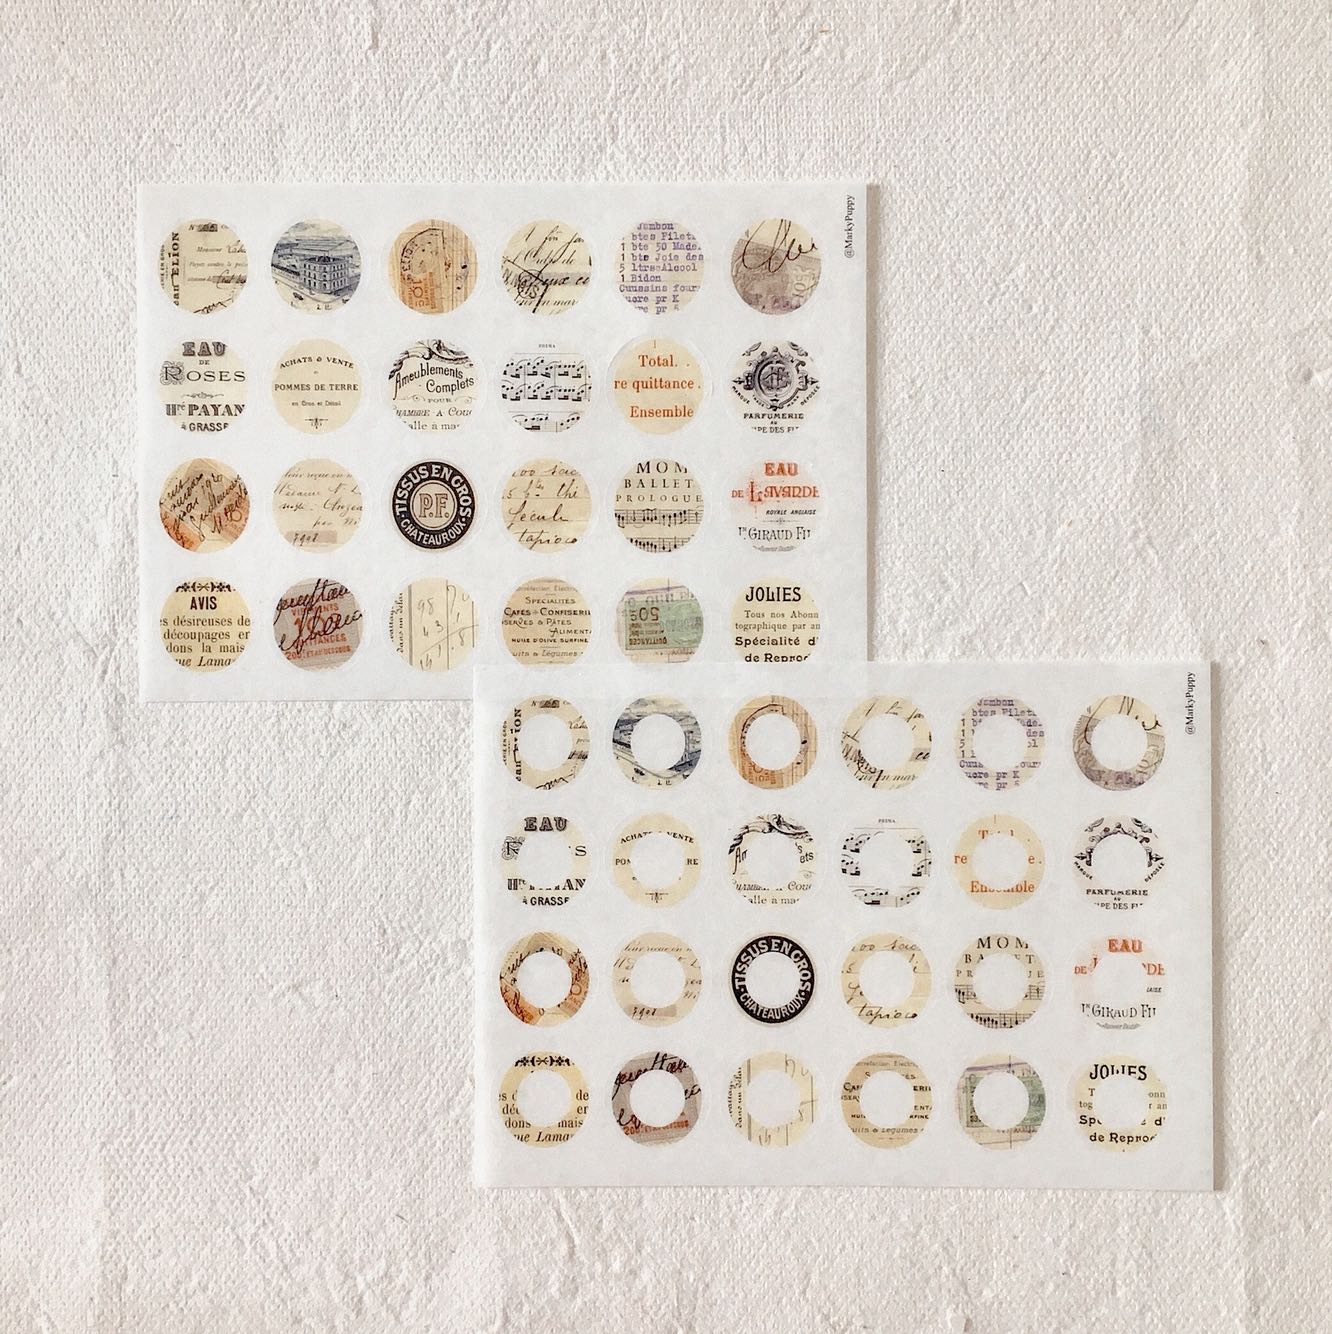 Sunny Sunday Washi Tape: Vintage Collage – Papergame